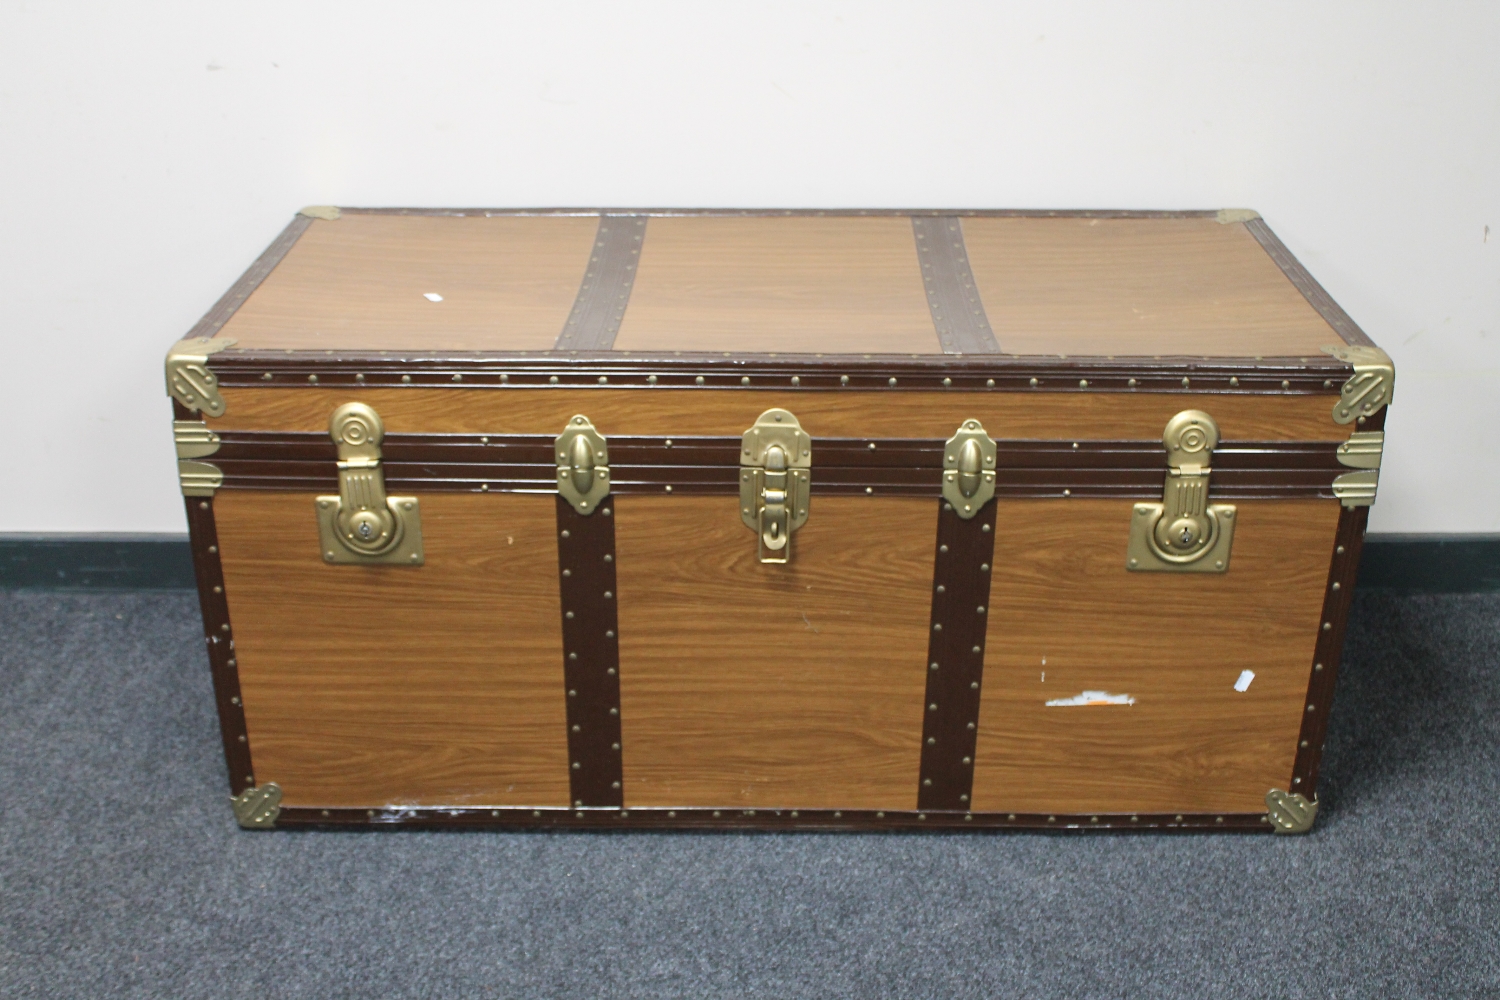 A mid twentieth century metal bound trunk